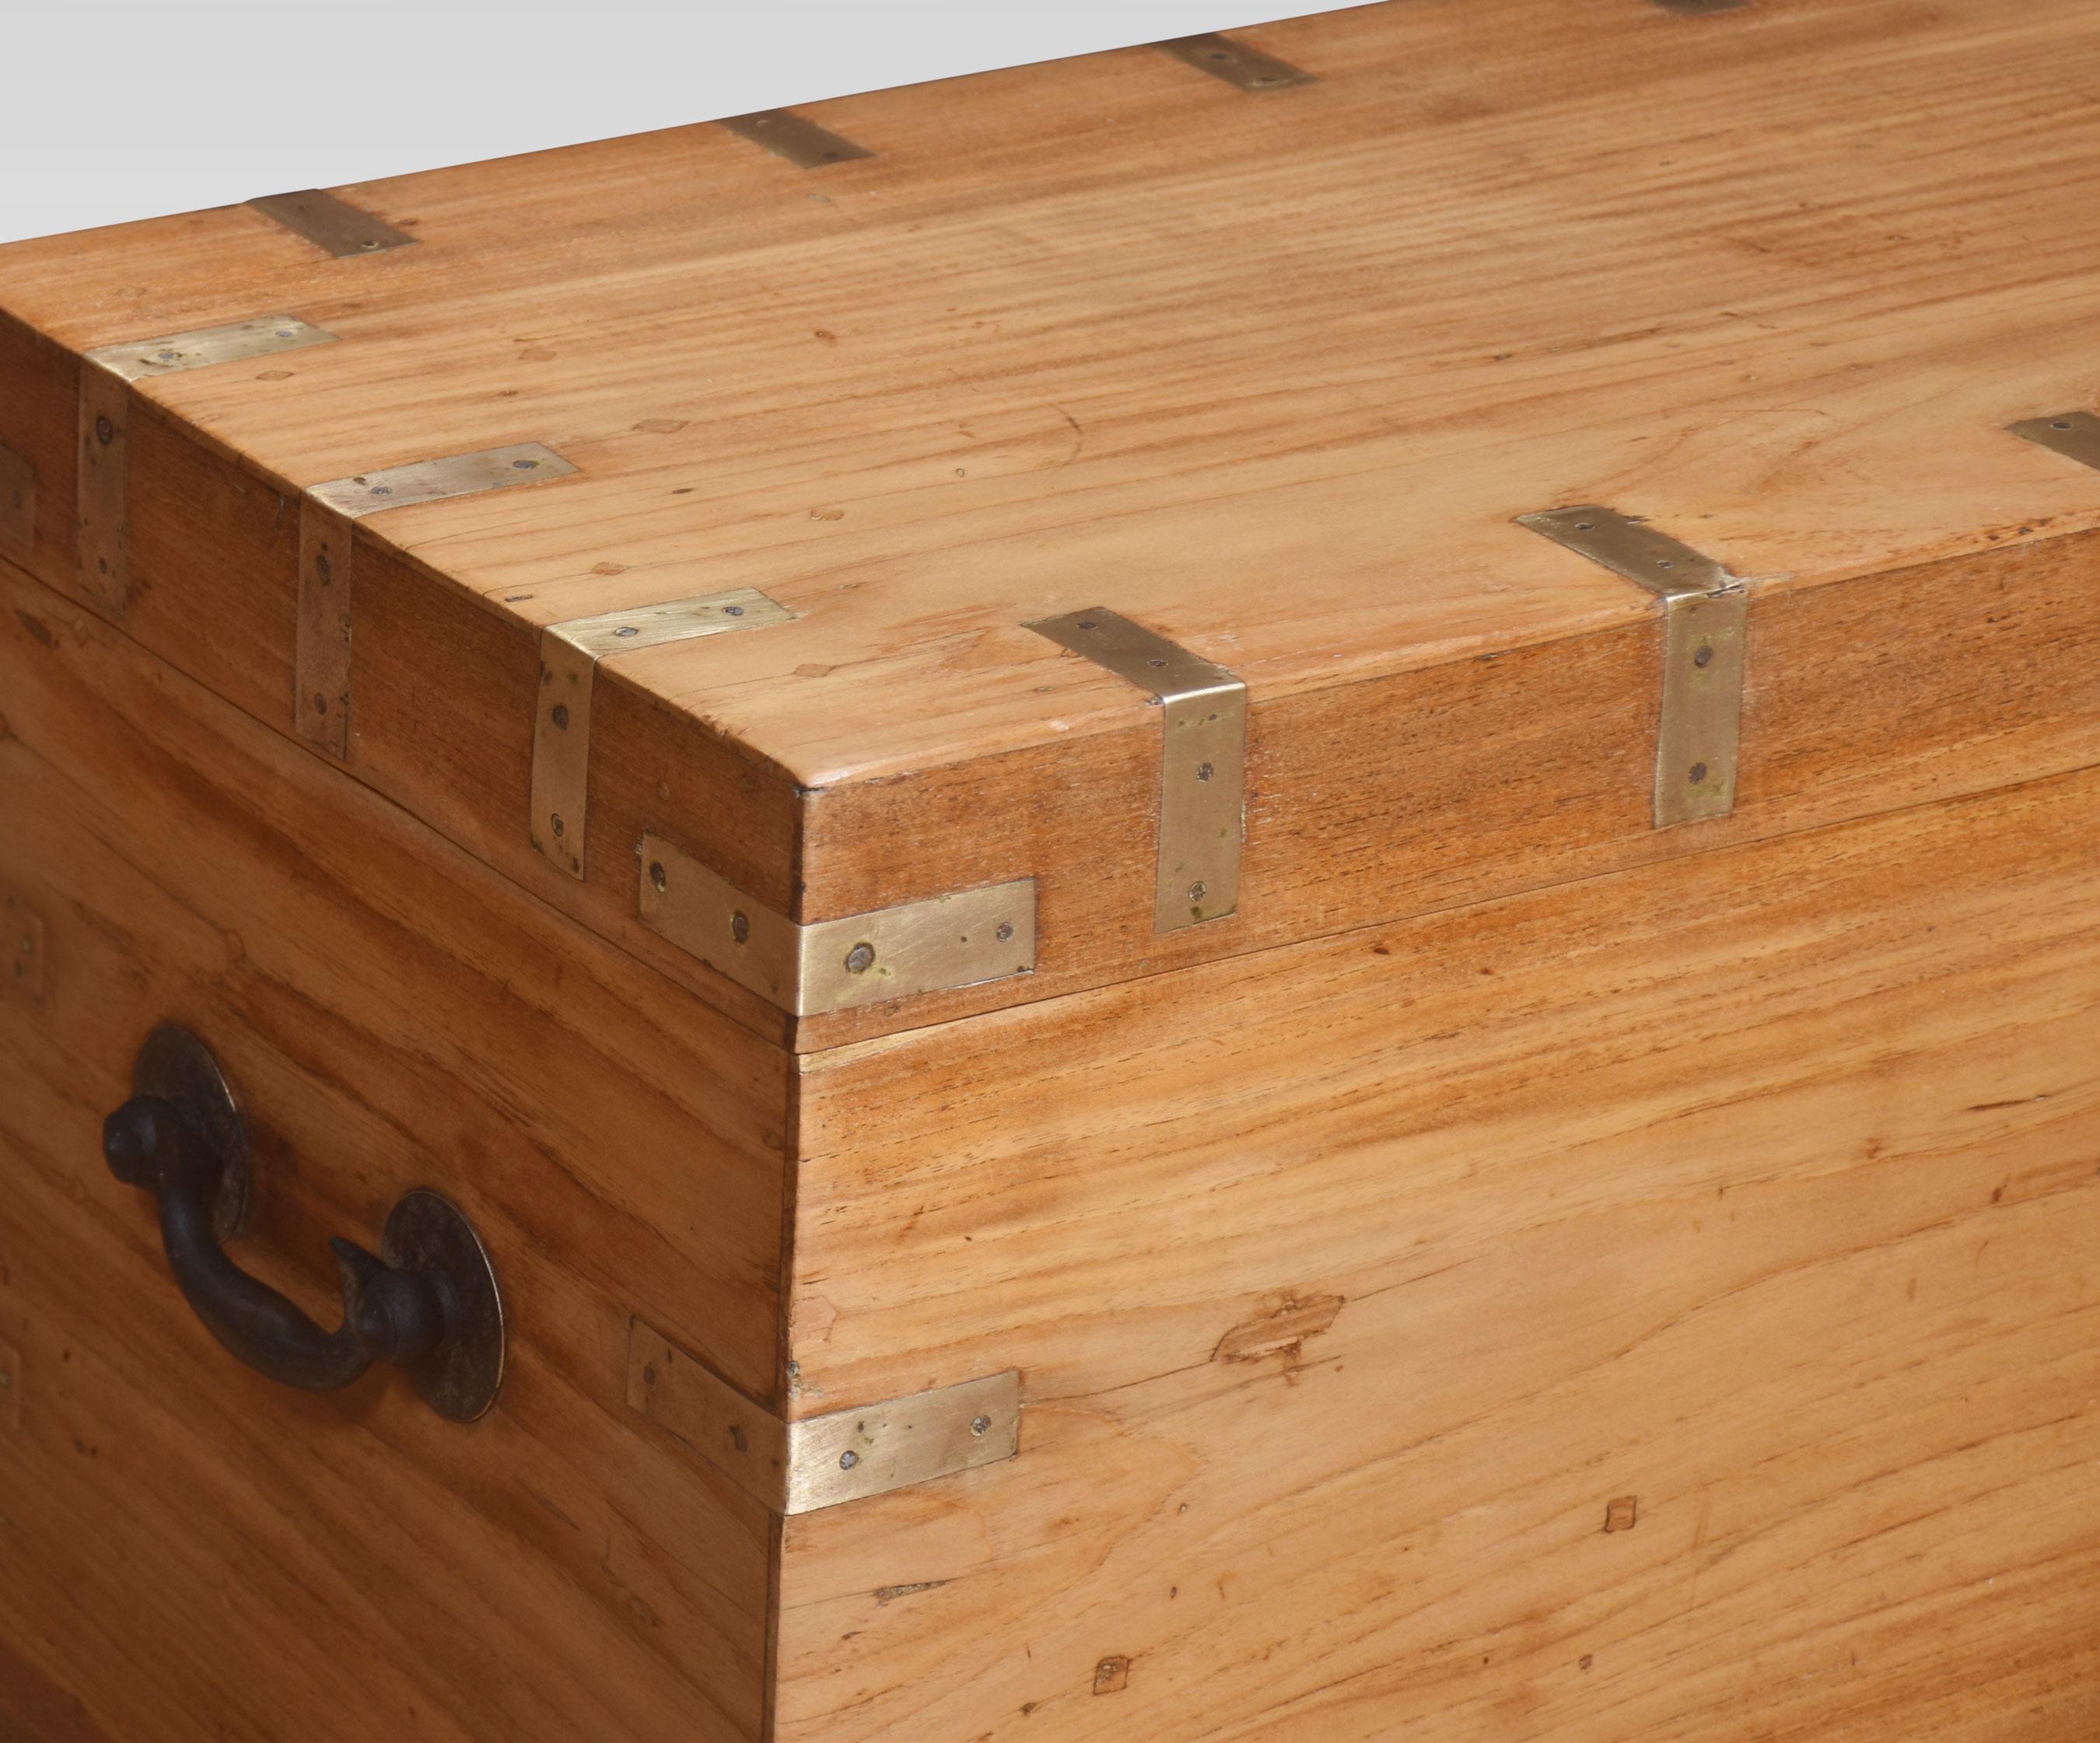 Campher Holz Messing gebunden Kampagne Box, die rechteckige Oberseite mit Messing-Band öffnet sich, um eine große Ablagefläche mit einem Fach mit Deckel zu offenbaren. Auf der Vorderseite mit ähnlichen Bändern und Messingbeschlägen, seitlich mit